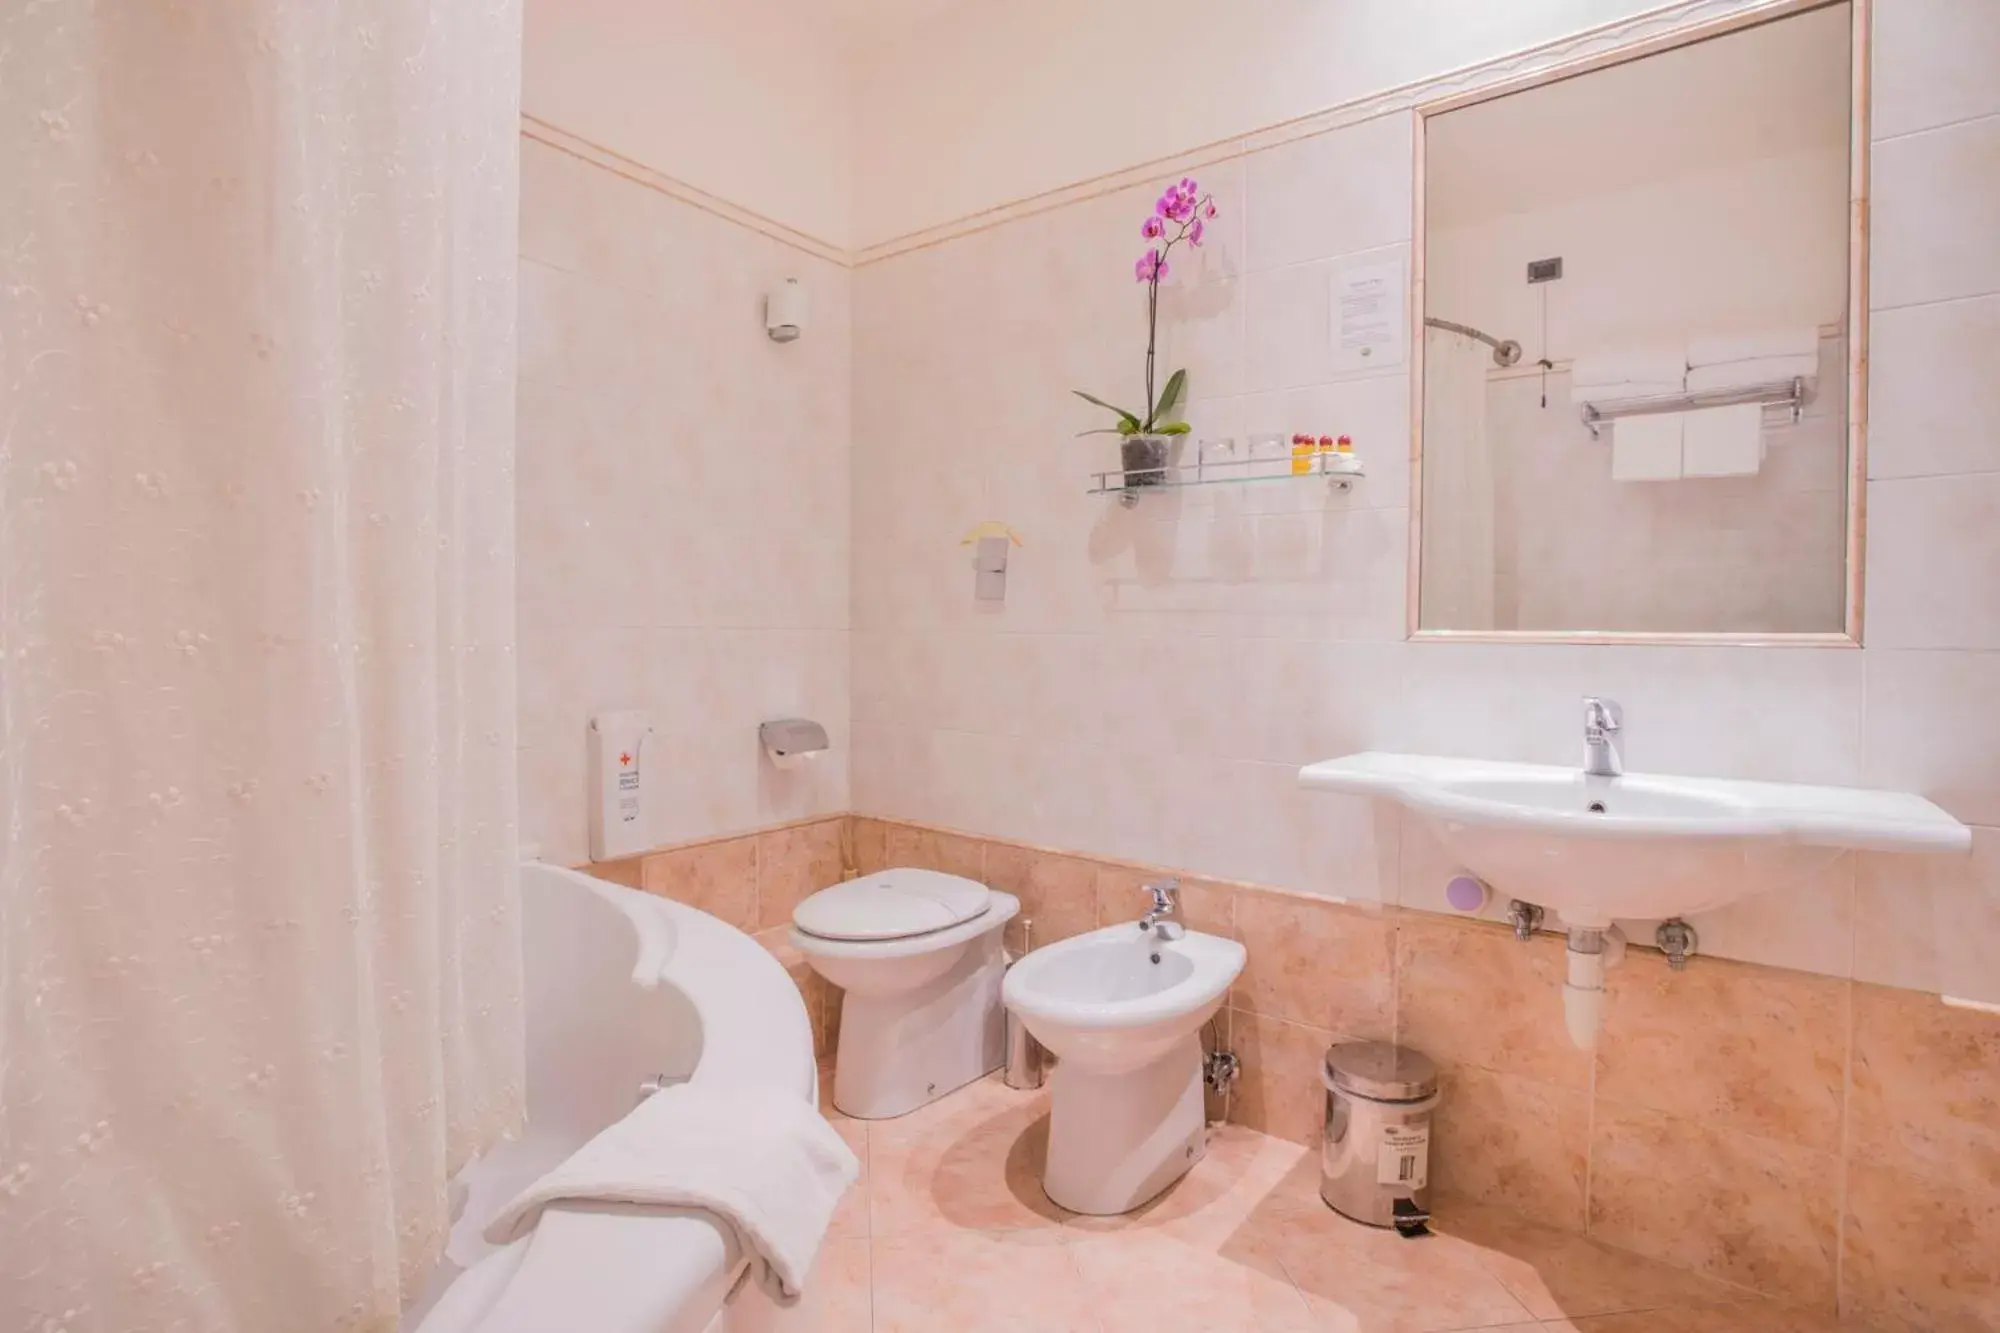 Bathroom in Hotel Galileo